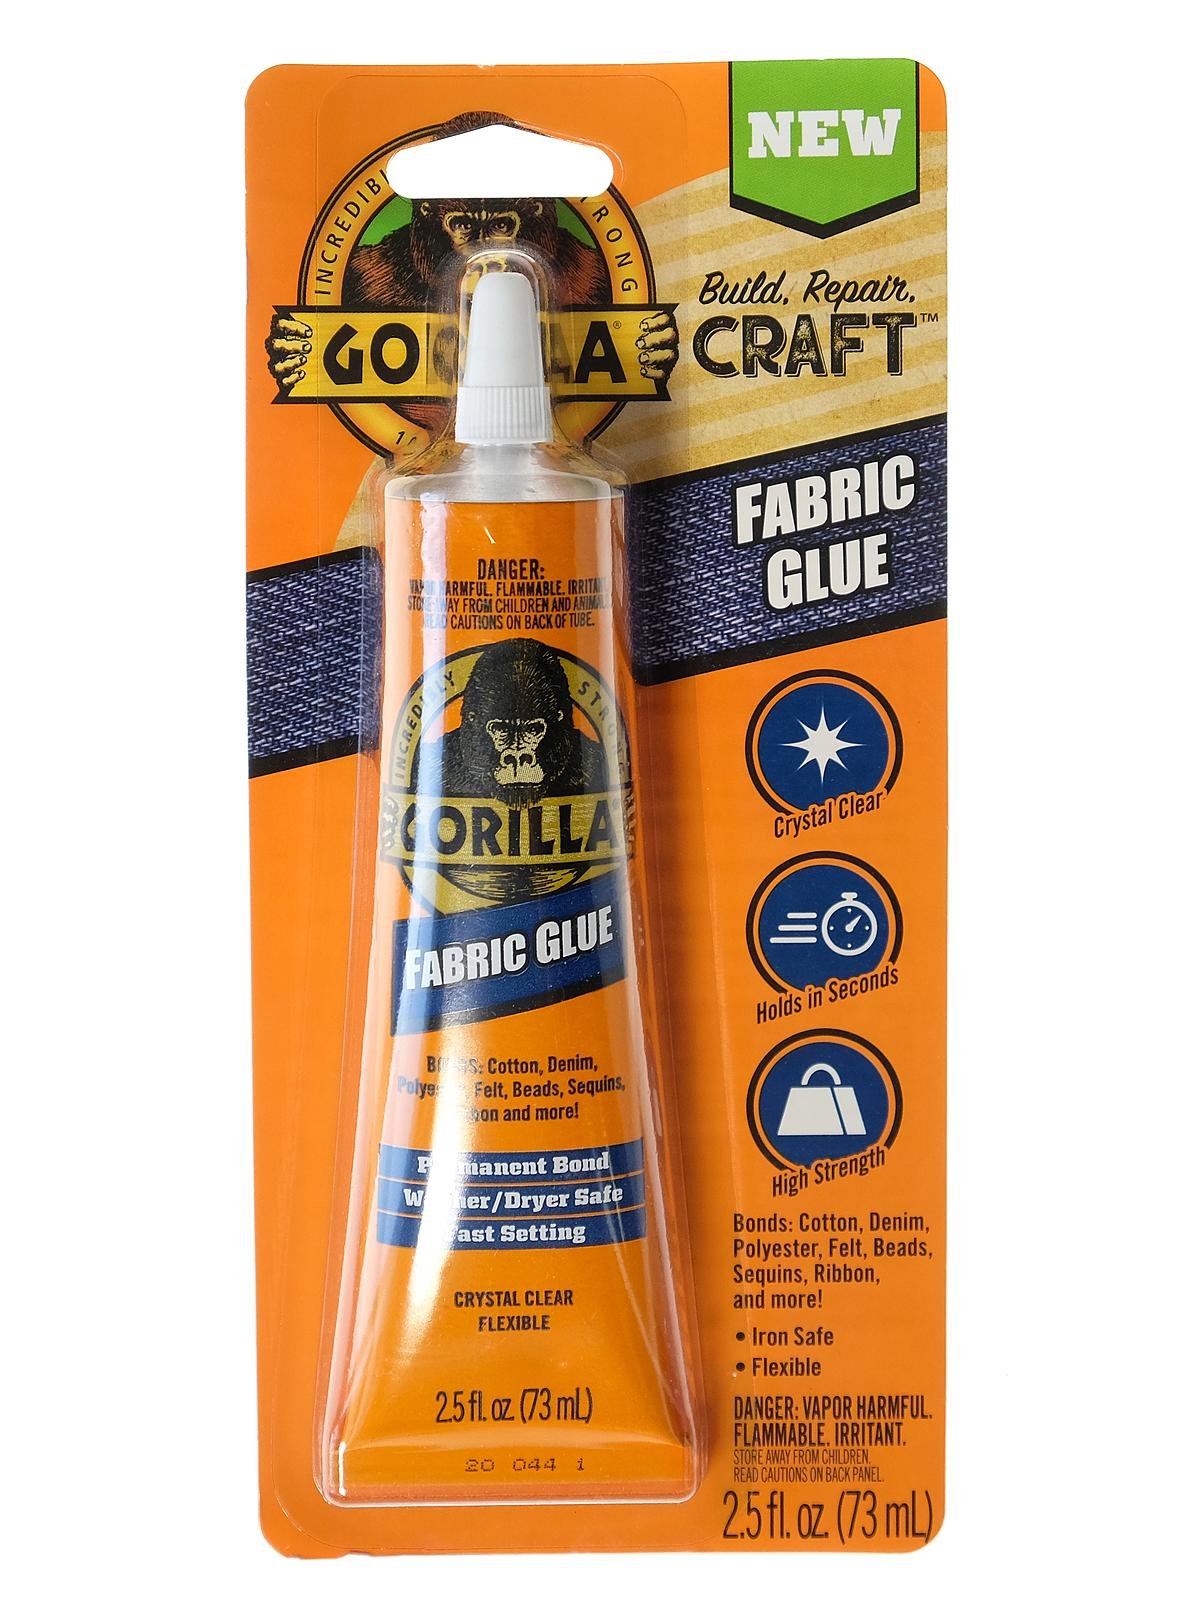 Lot of 2 Gorilla Fabric Glue ~Crystal Clear & Flexible~ (2.5 fl oz Each)  #4524